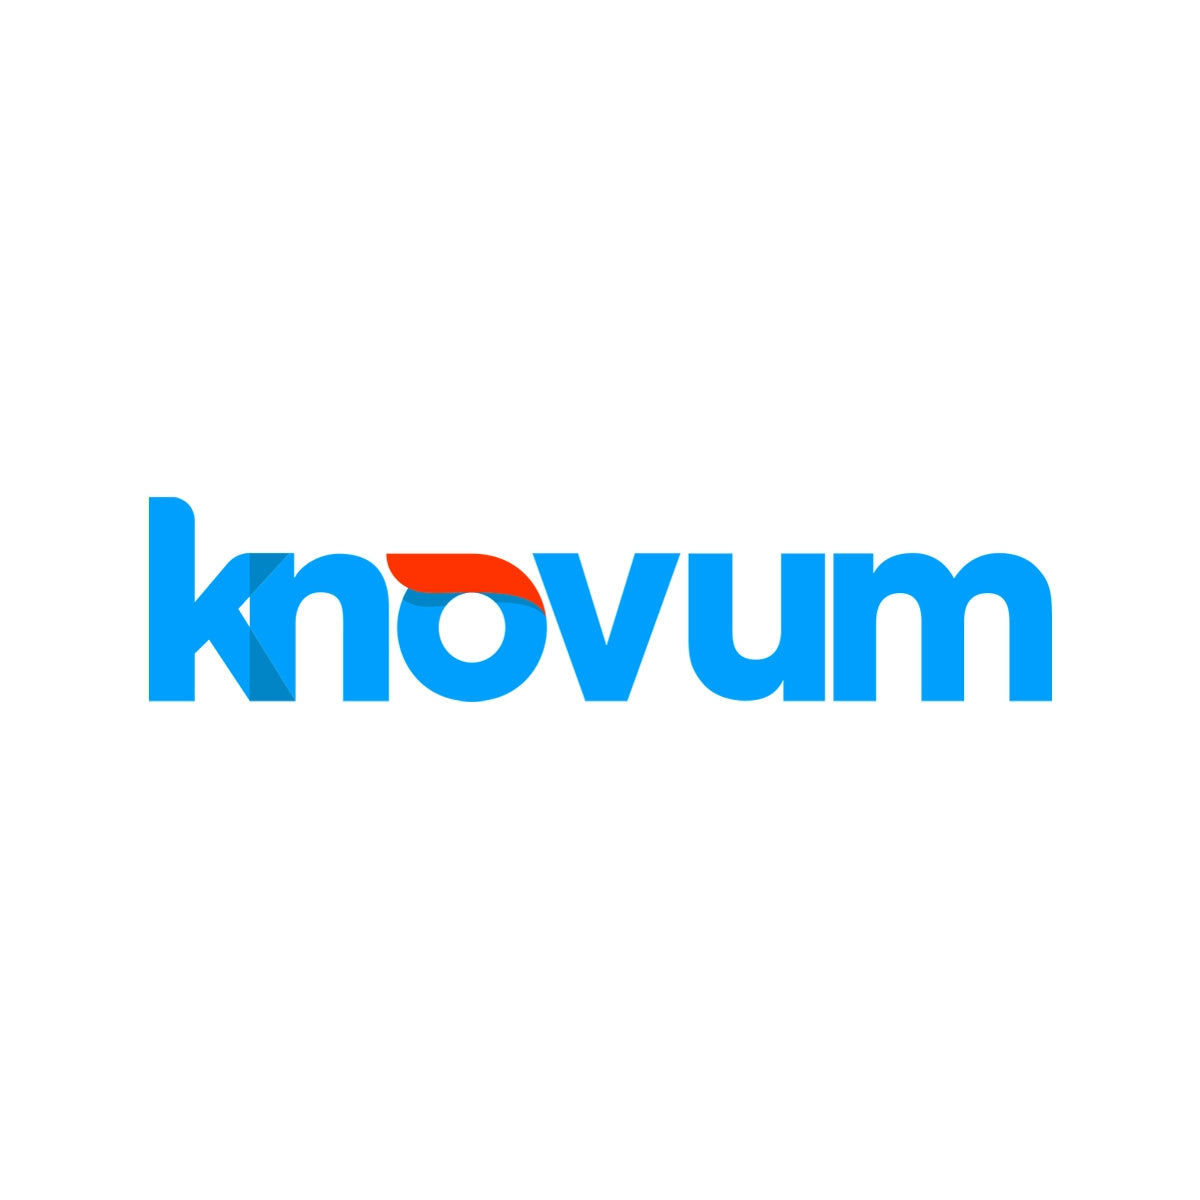 KNOVUM.COM